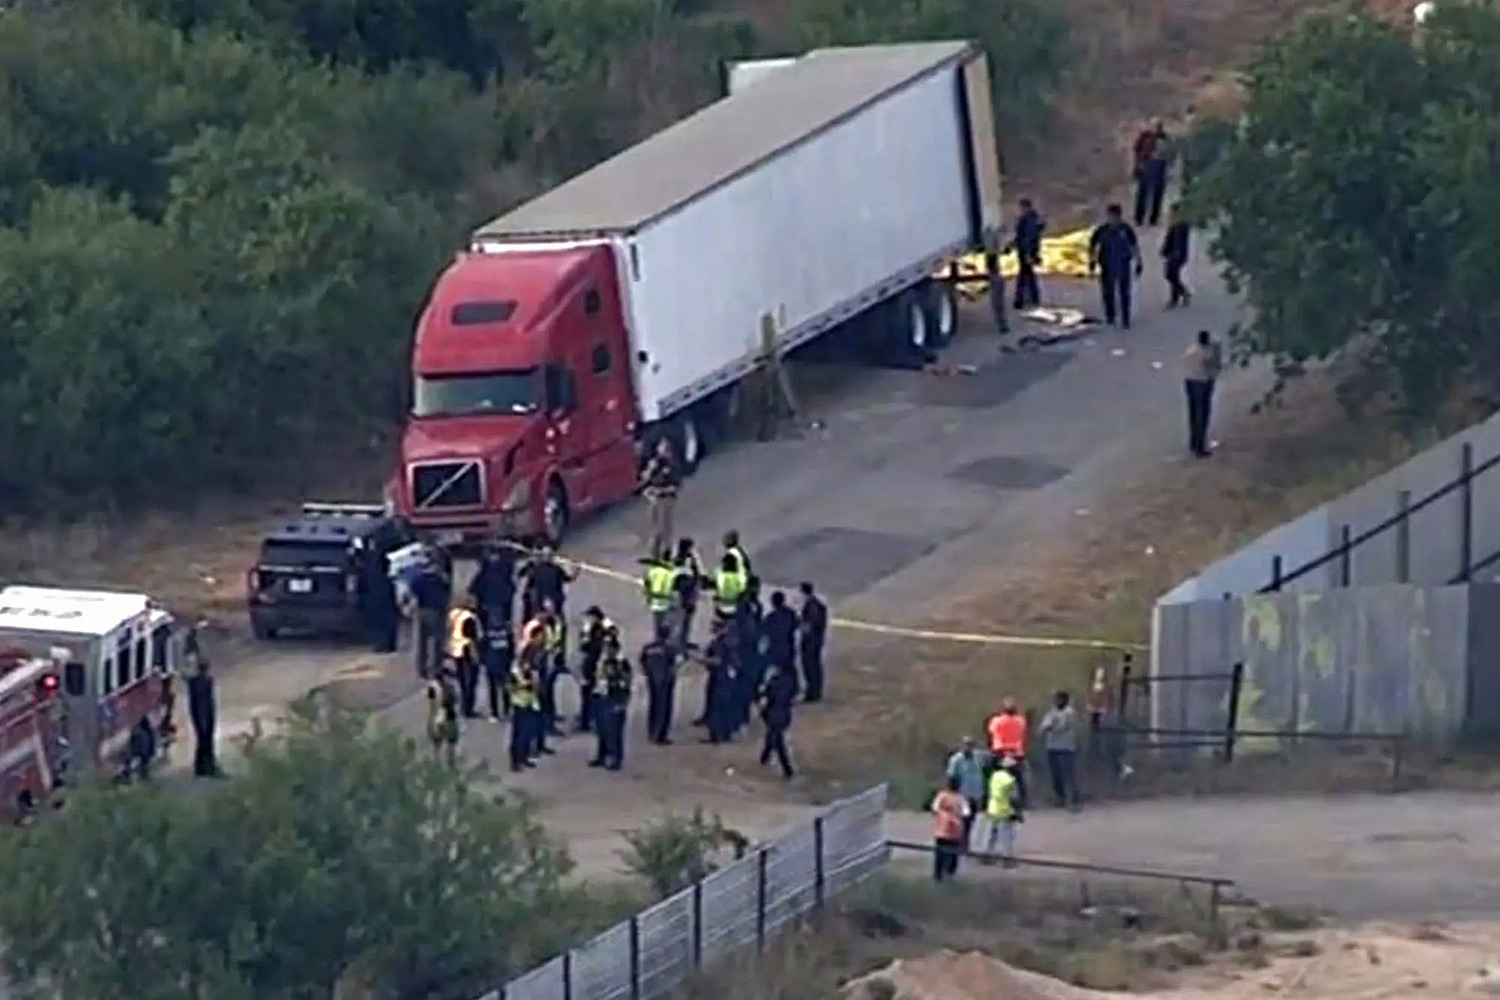 Cận cảnh xe container chứa 46 thi thể được phát hiện ở bang Texas, Mỹ ngày 27/6. Ảnh: KSAT.